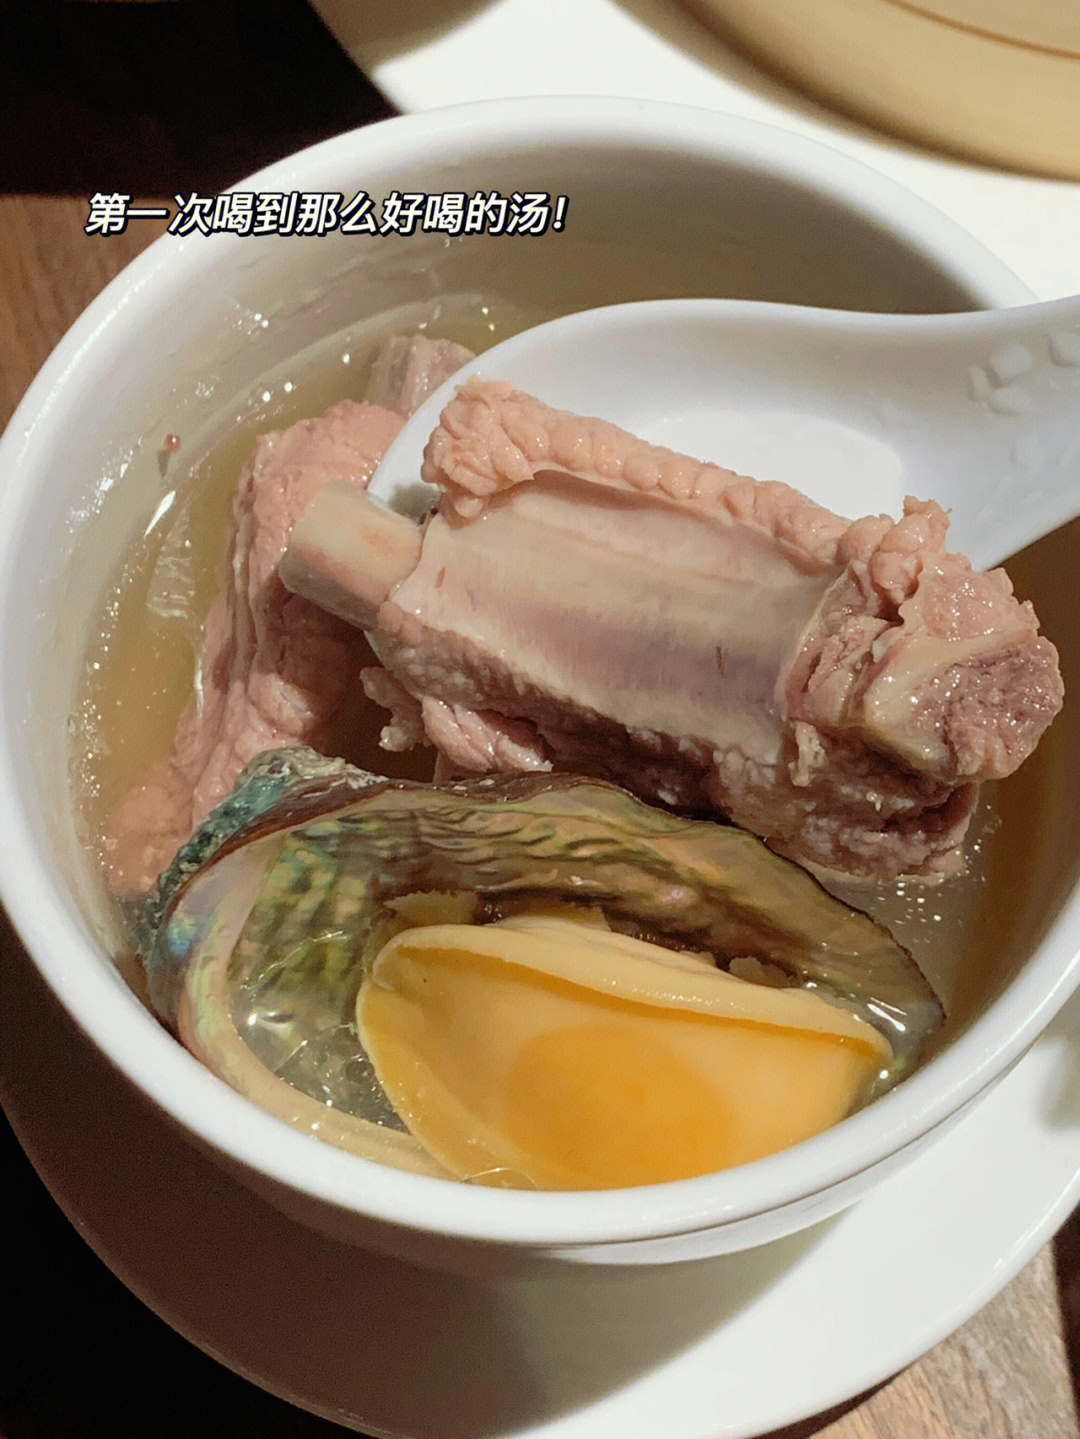 排骨炖的很酥烂也很入味,鲍鱼超大个很新鲜02铁观音的甜汤也太绝了!